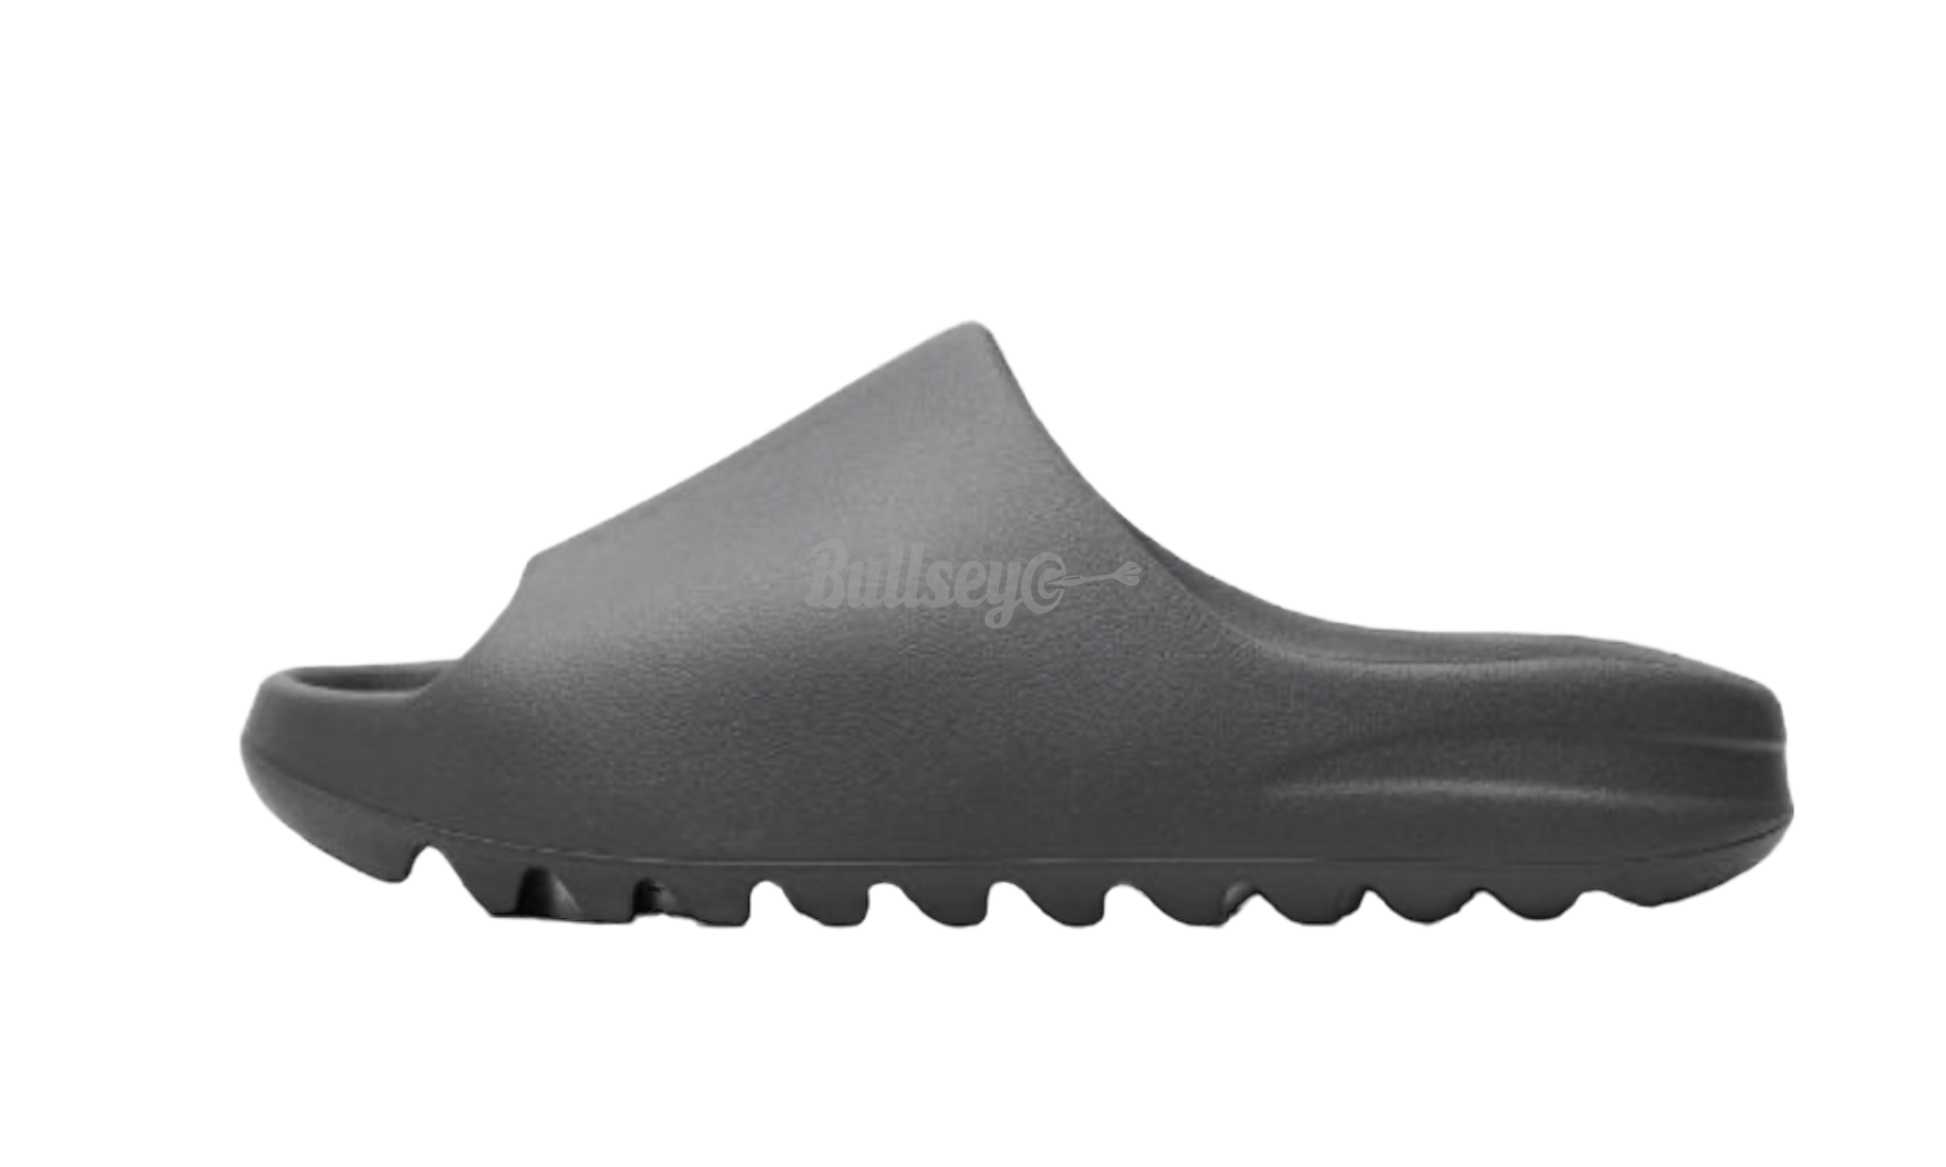 Adidas Yeezy Slide "Slate Grey"-Bullseye Sneaker Boutique